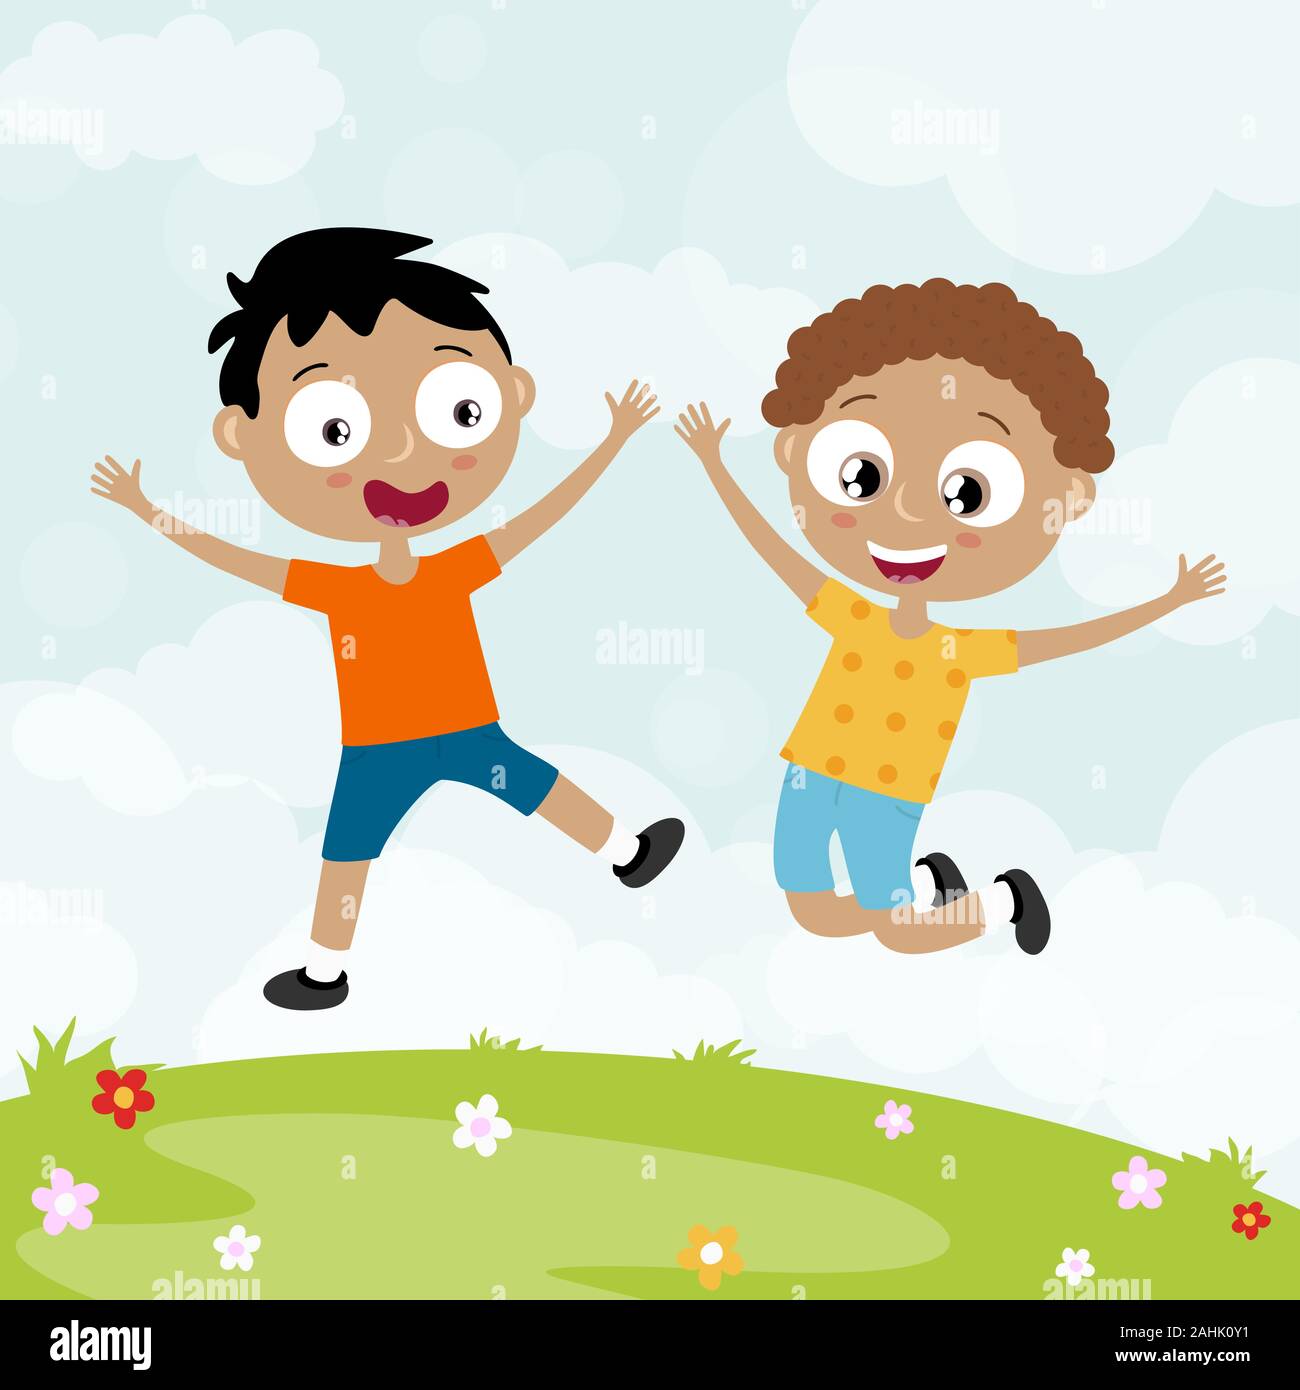 Fichier vectoriel EPS10 montrant heureux les jeunes enfants, les garçons rire, sauter, jouer et s'amuser ensemble en face de l'heure d'été contexte avec green gras Illustration de Vecteur